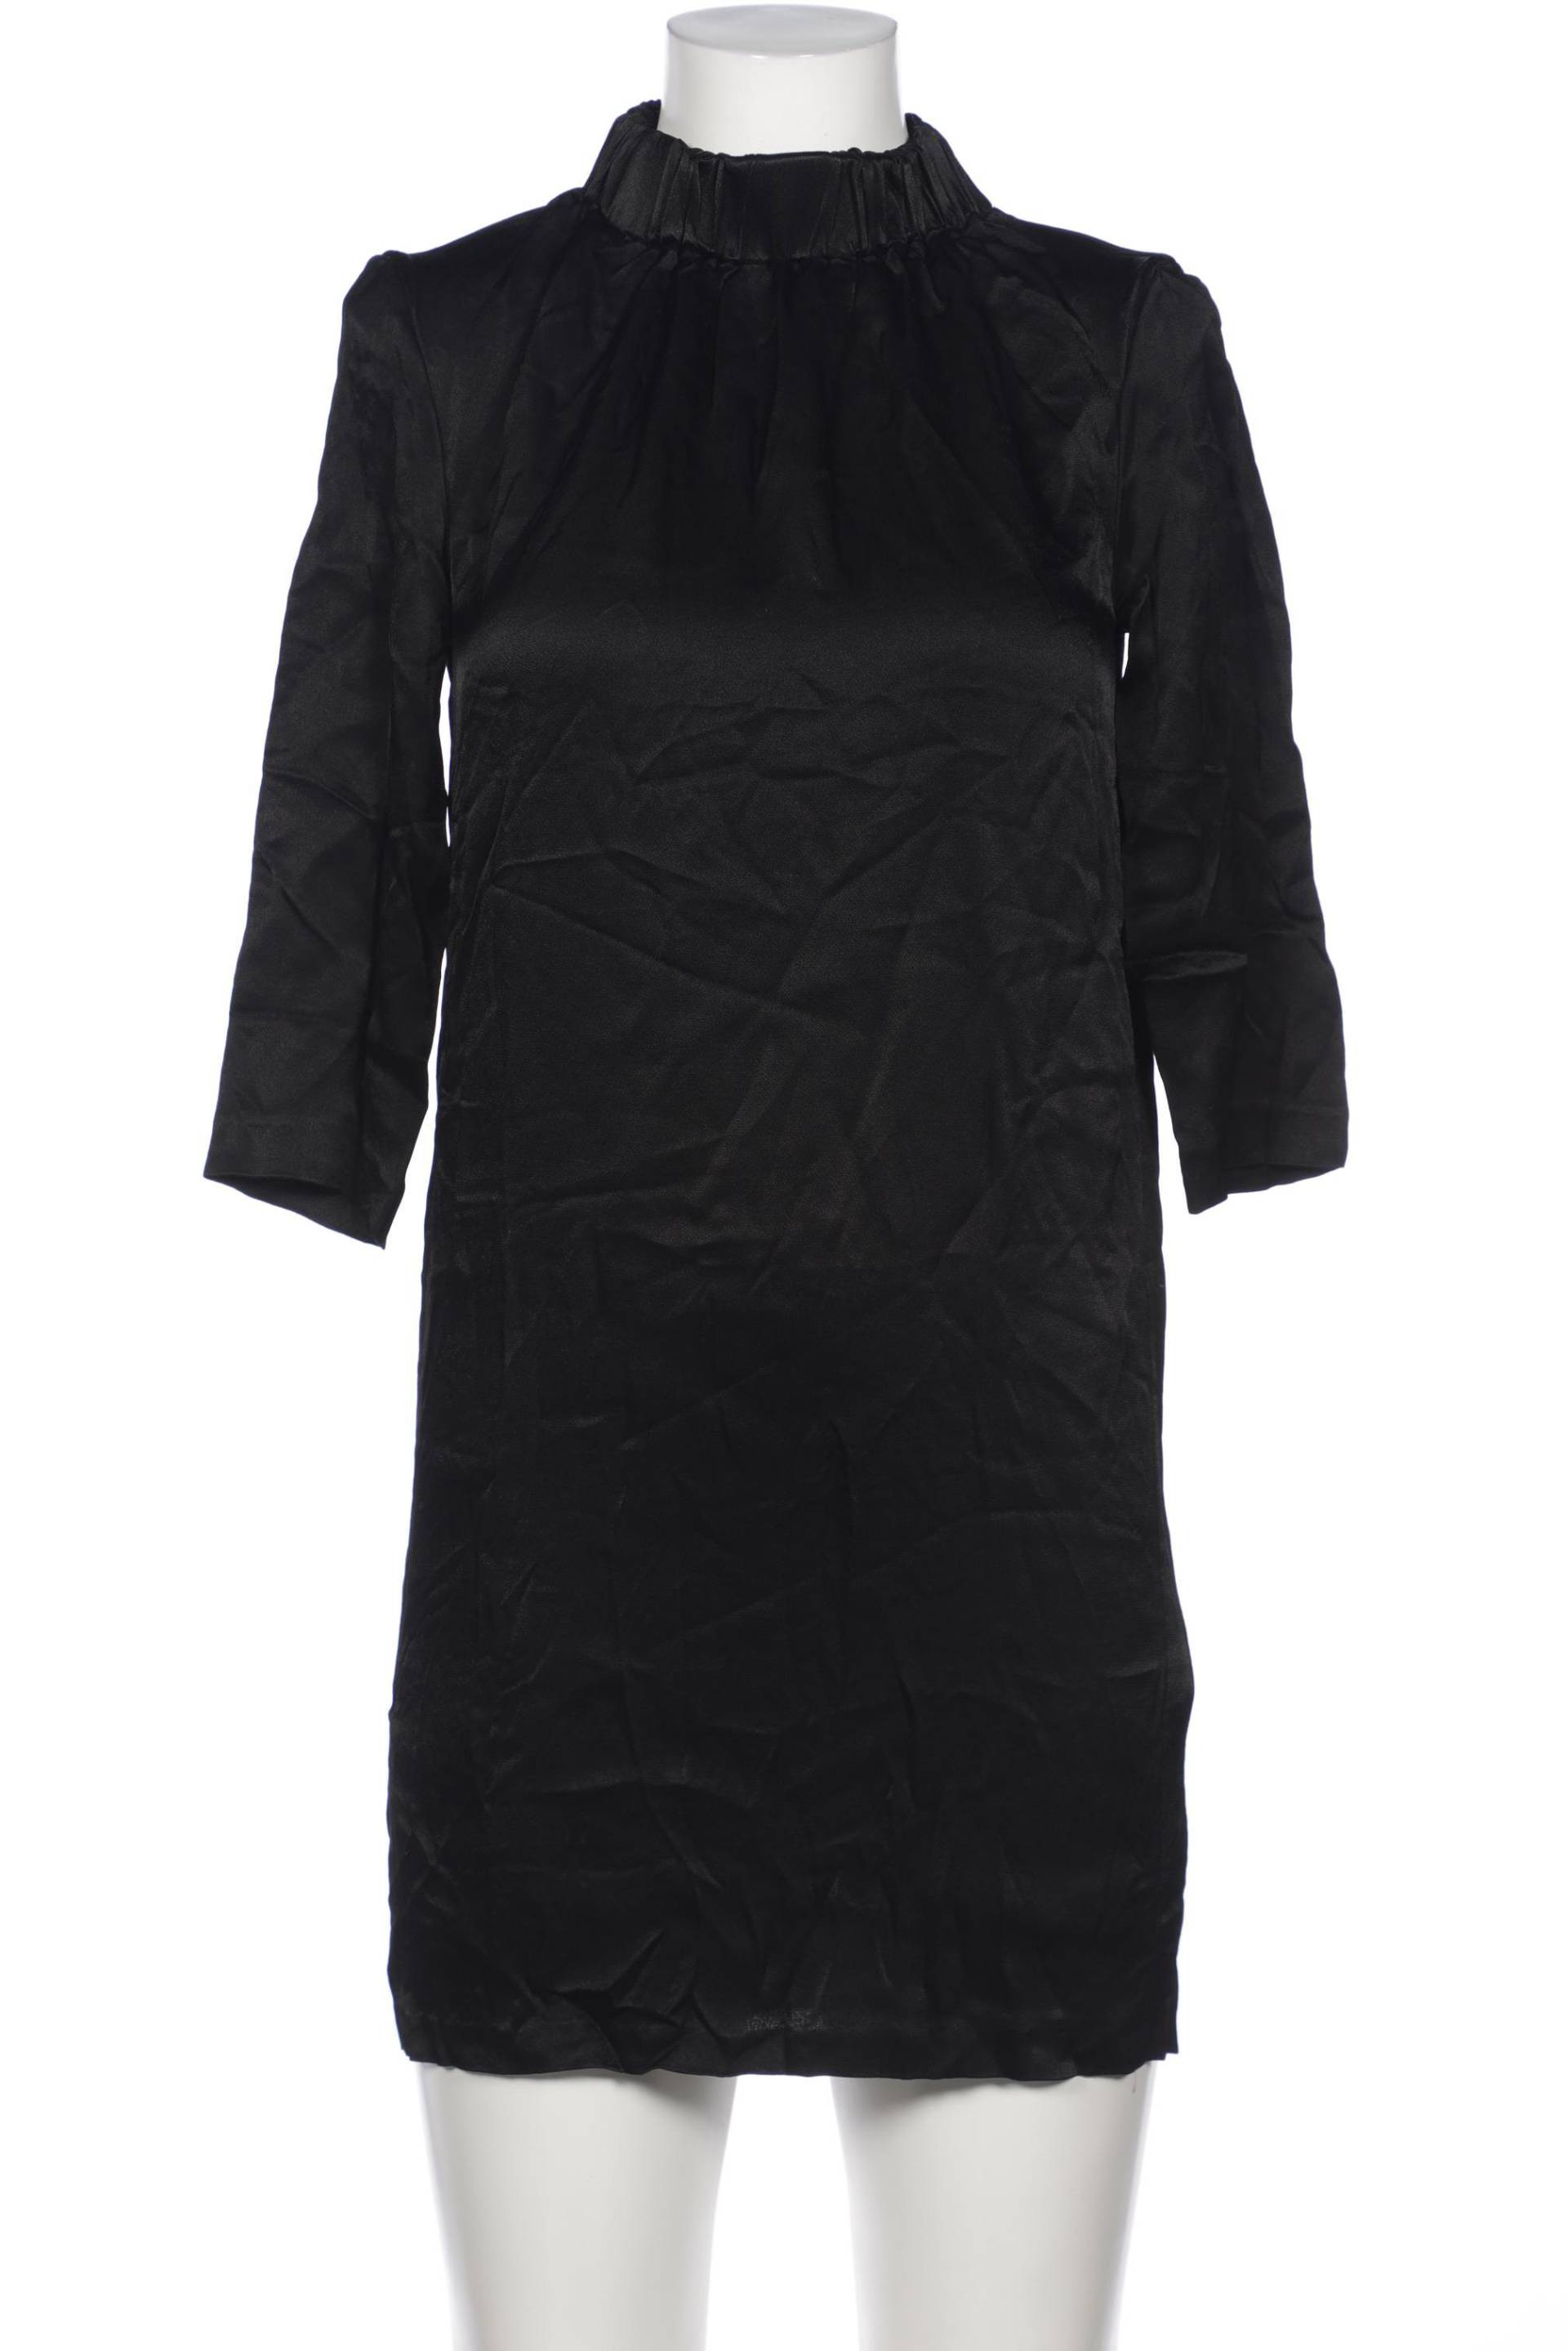 Hallhuber Damen Kleid, schwarz, Gr. 36 von Hallhuber